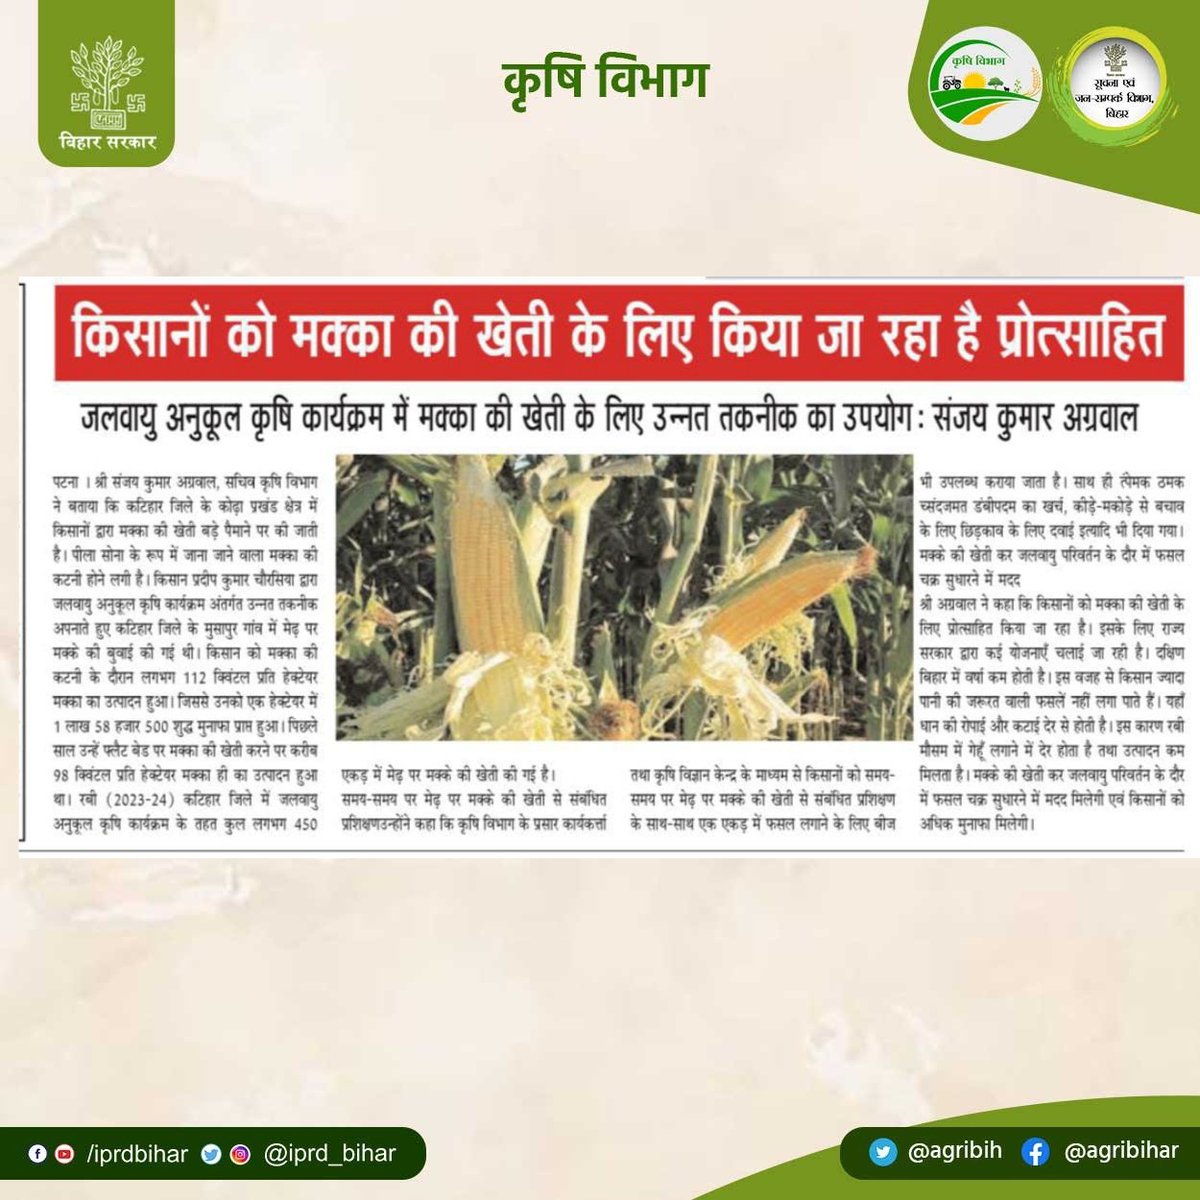 सचिव कृषि विभाग श्री @SAgarwal_IAS जी ने कहा कि किसानों को मक्का की खेती के लिए किया जा रहा है प्रोत्साहित। जलवायु अनुकूल कृषि कार्यक्रम में मक्का की खेती के लिए उन्नत तकनीक का उपयोग। @abhitwittt @BametiBihar @Bau_sabour @Rpcau_pusa @BISA__India @AgriGoI @IPRD_Bihar #Maize